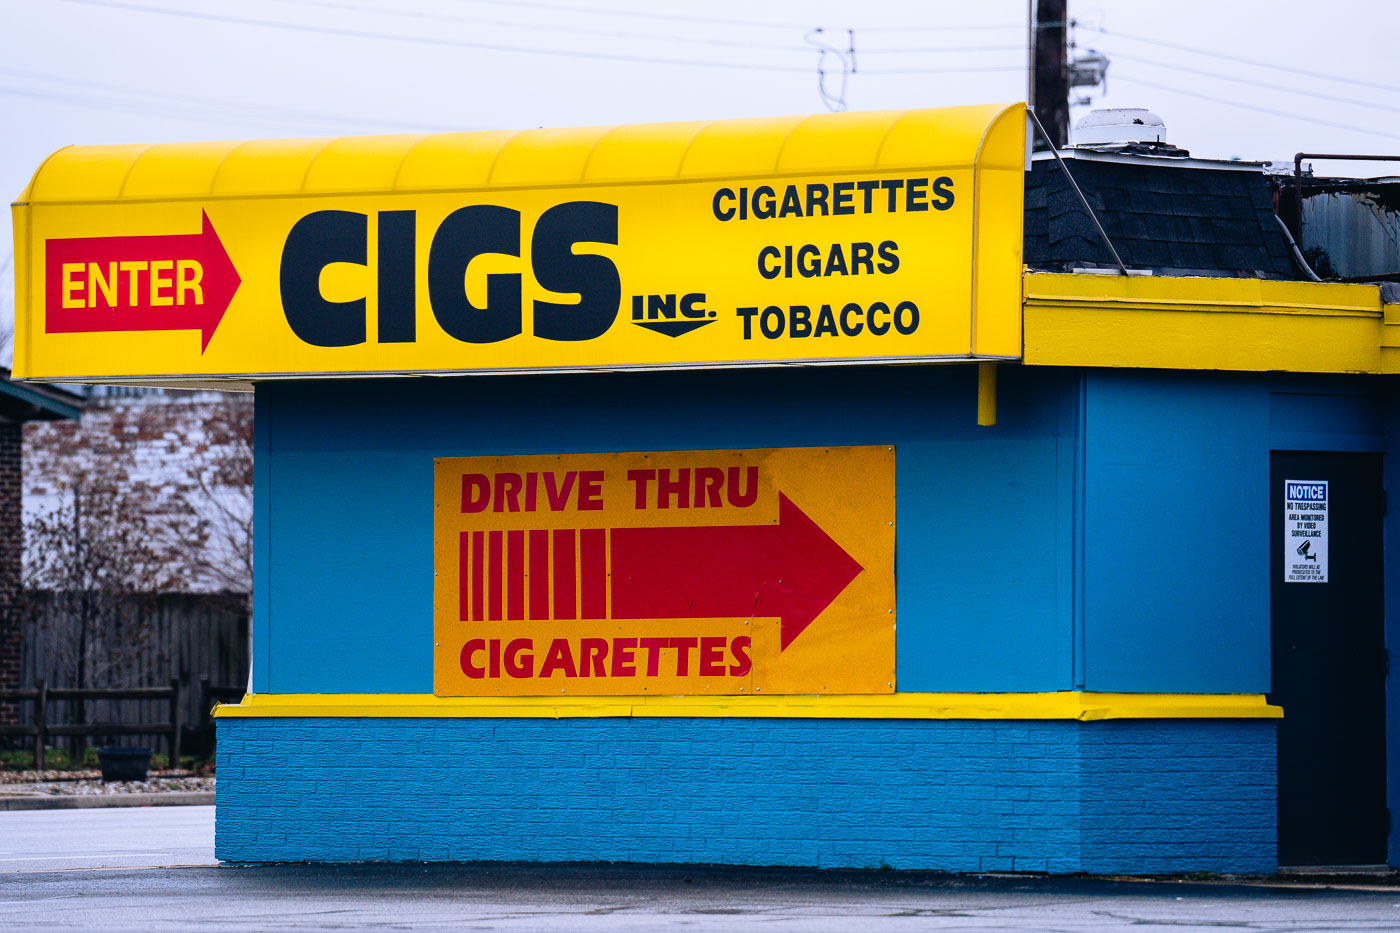 Drive Thru Cigarette store in Indiana